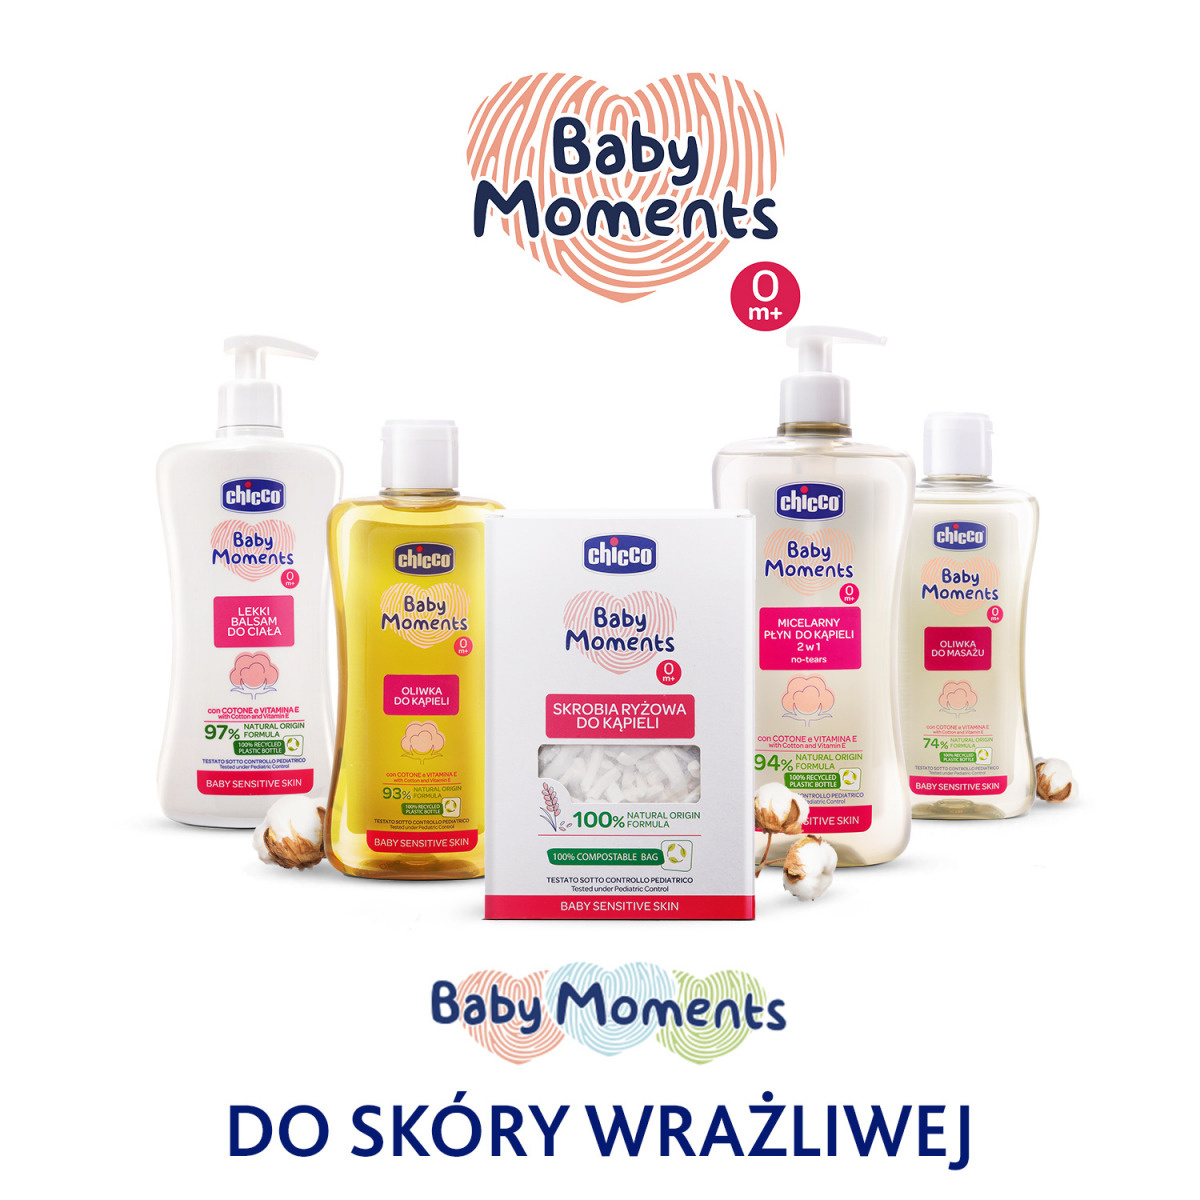 Chicco_Baby-Moments_Range_1500x1500_WRAŻLIWA